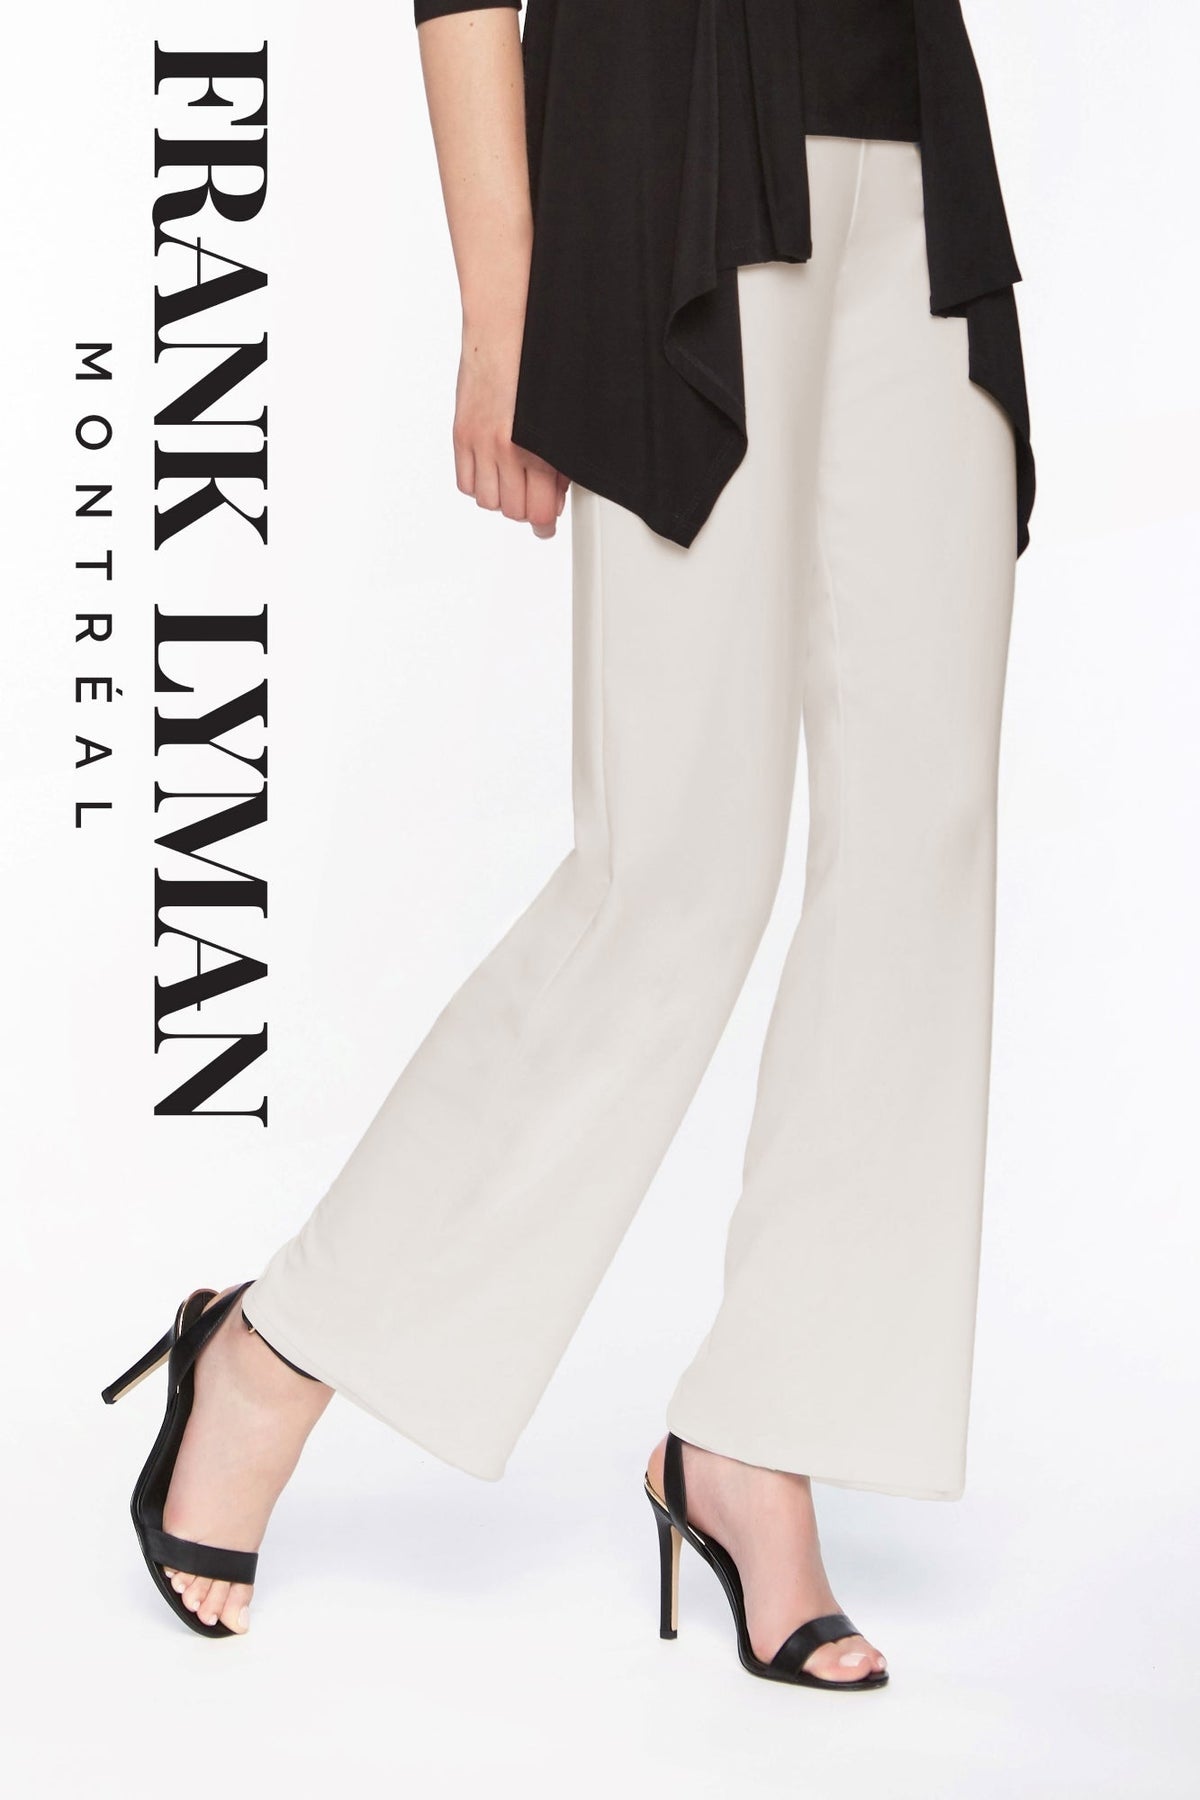 Pantalon en Knit par Frank Lyman - 038 Almond - Boutique Vvög, référence en mode pour homme et femme, vêtement mode pour homme & femme